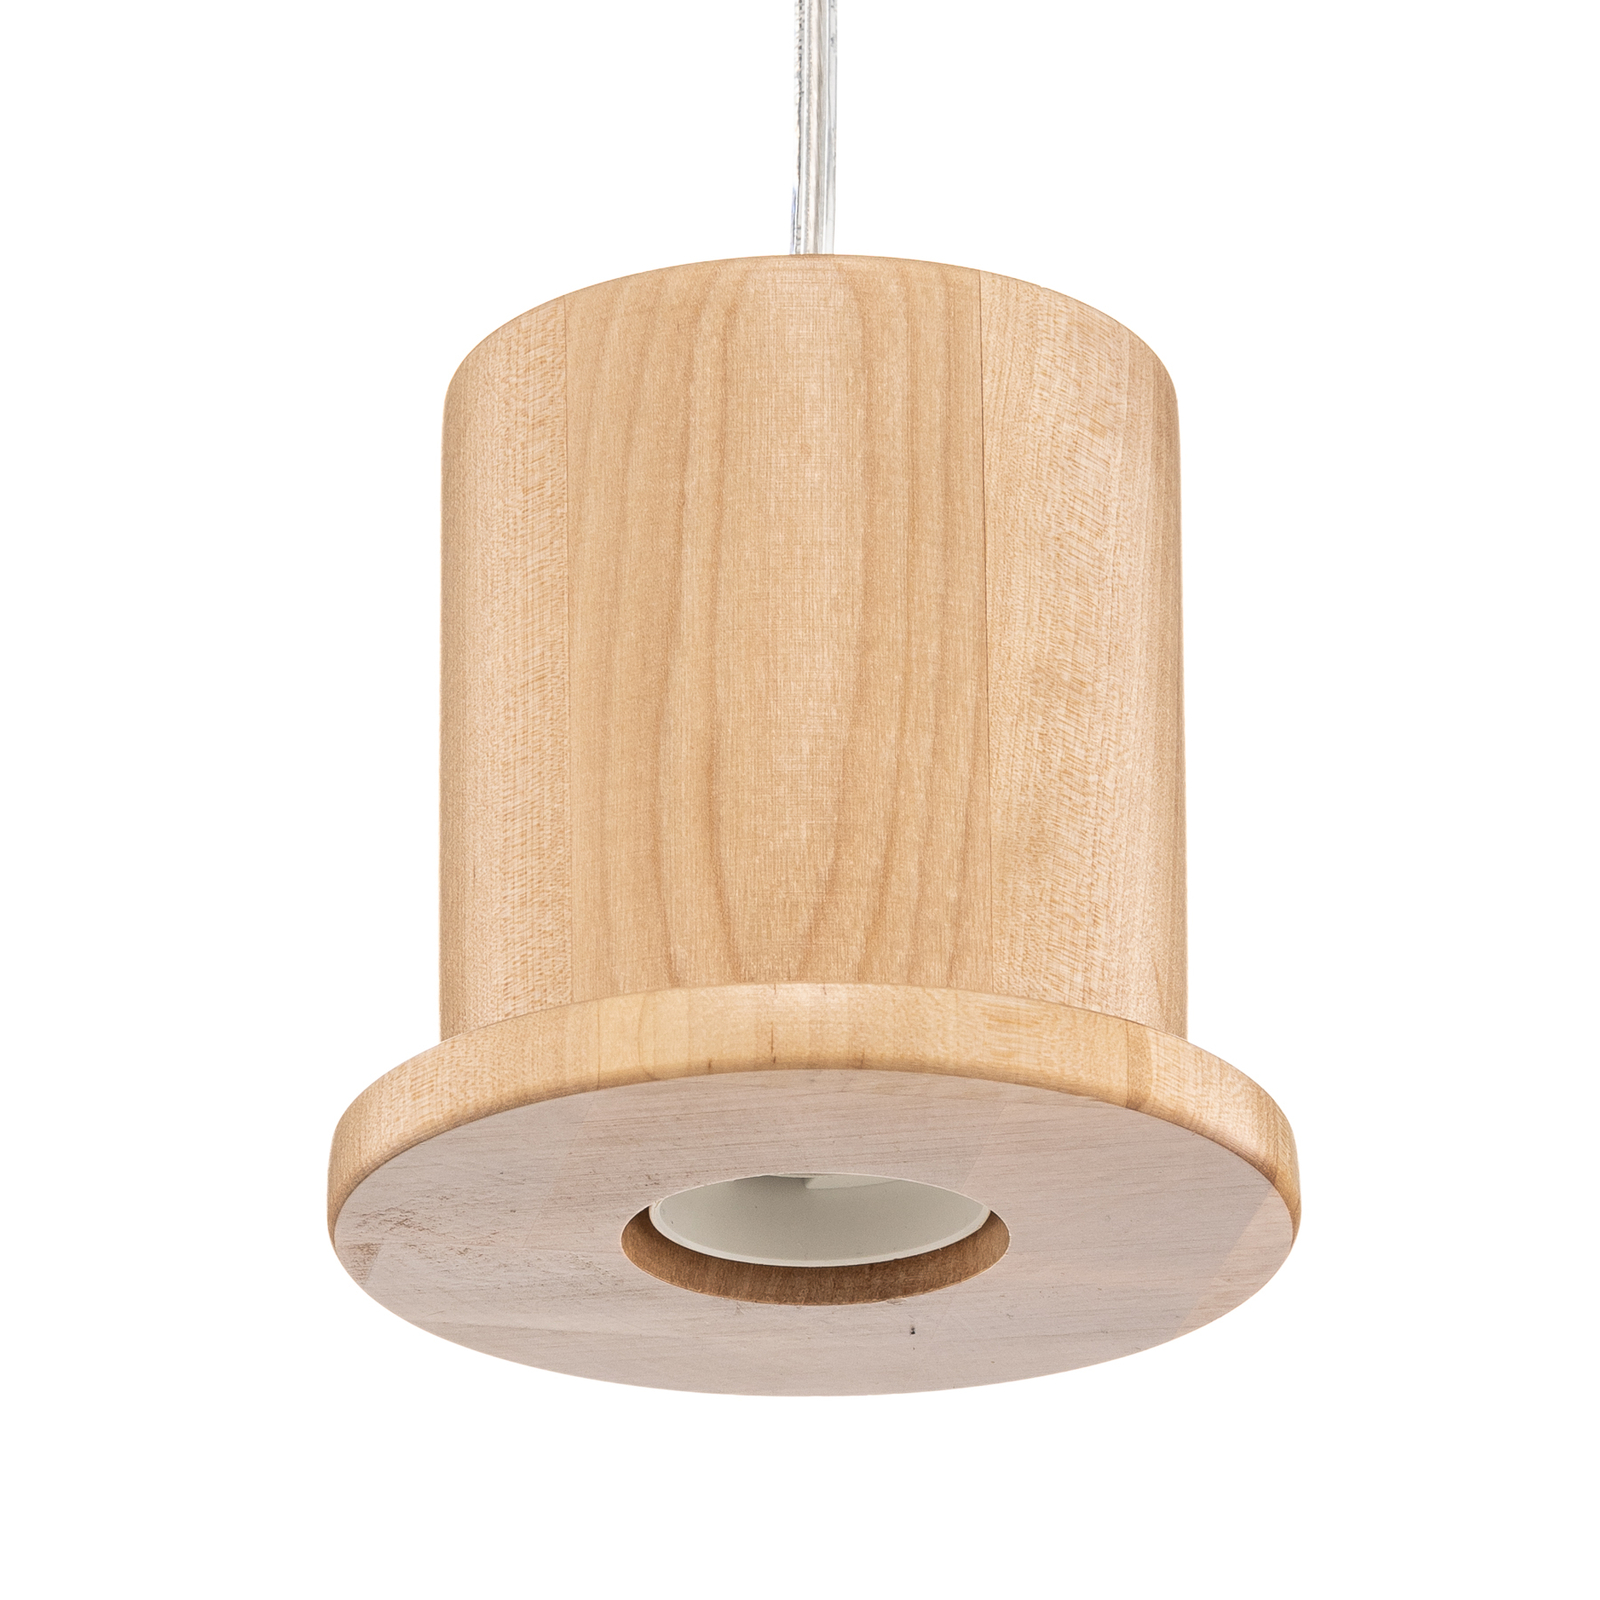 Hanglamp Head met fitting van licht hout